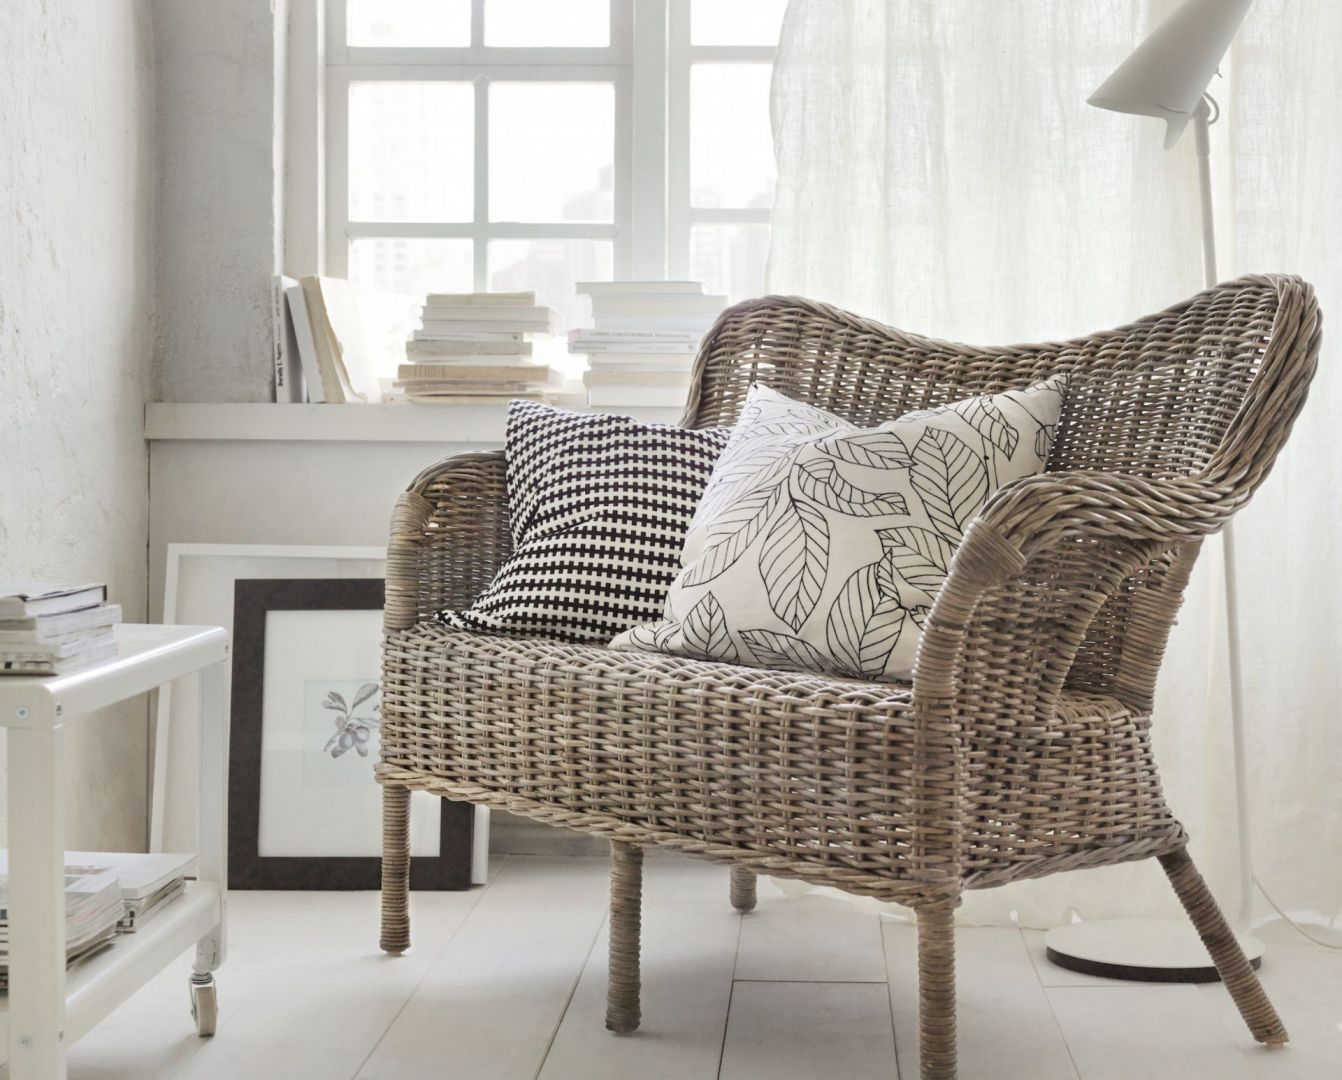 Wiklinowa sofa może być ozdobą salonu lub ogrodu. Fot. IKEA